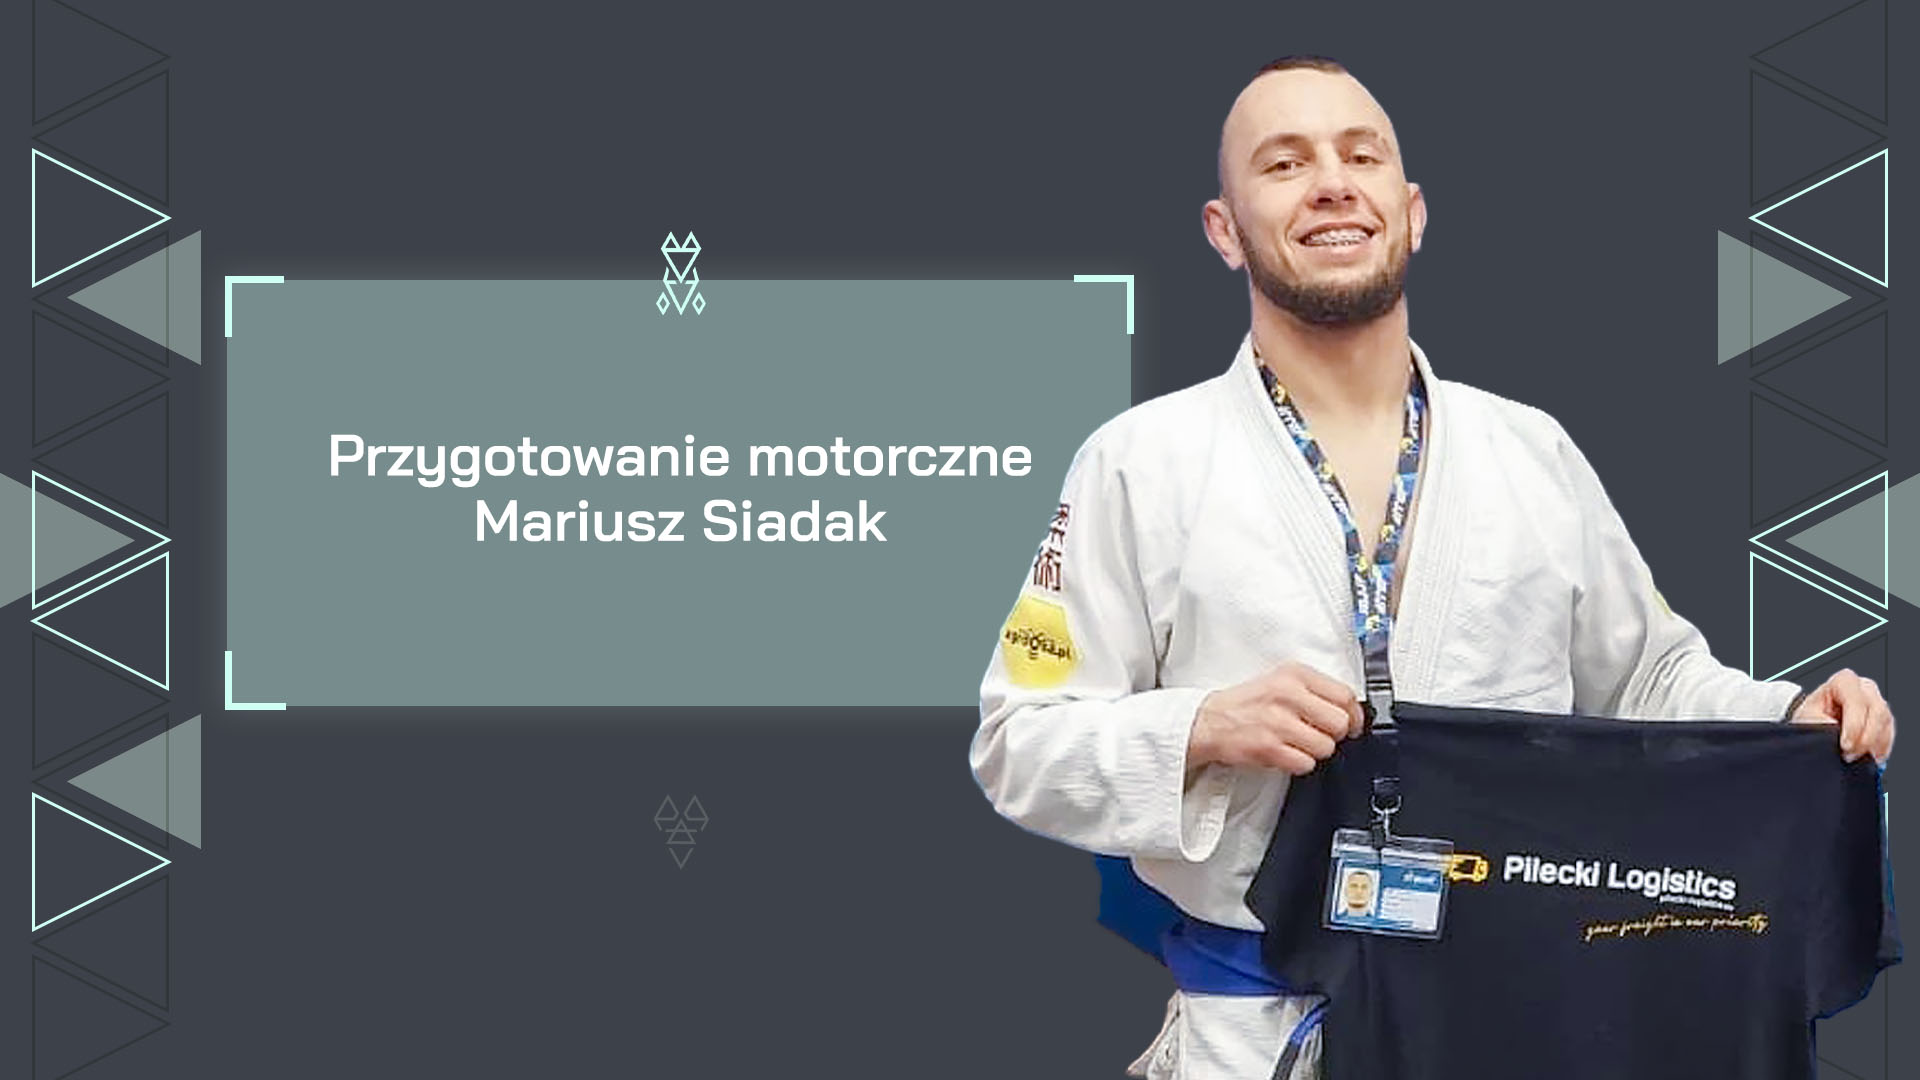 Przygotowanie motoryczne Mariusz Siadak cs. Matt Kosmaczewski